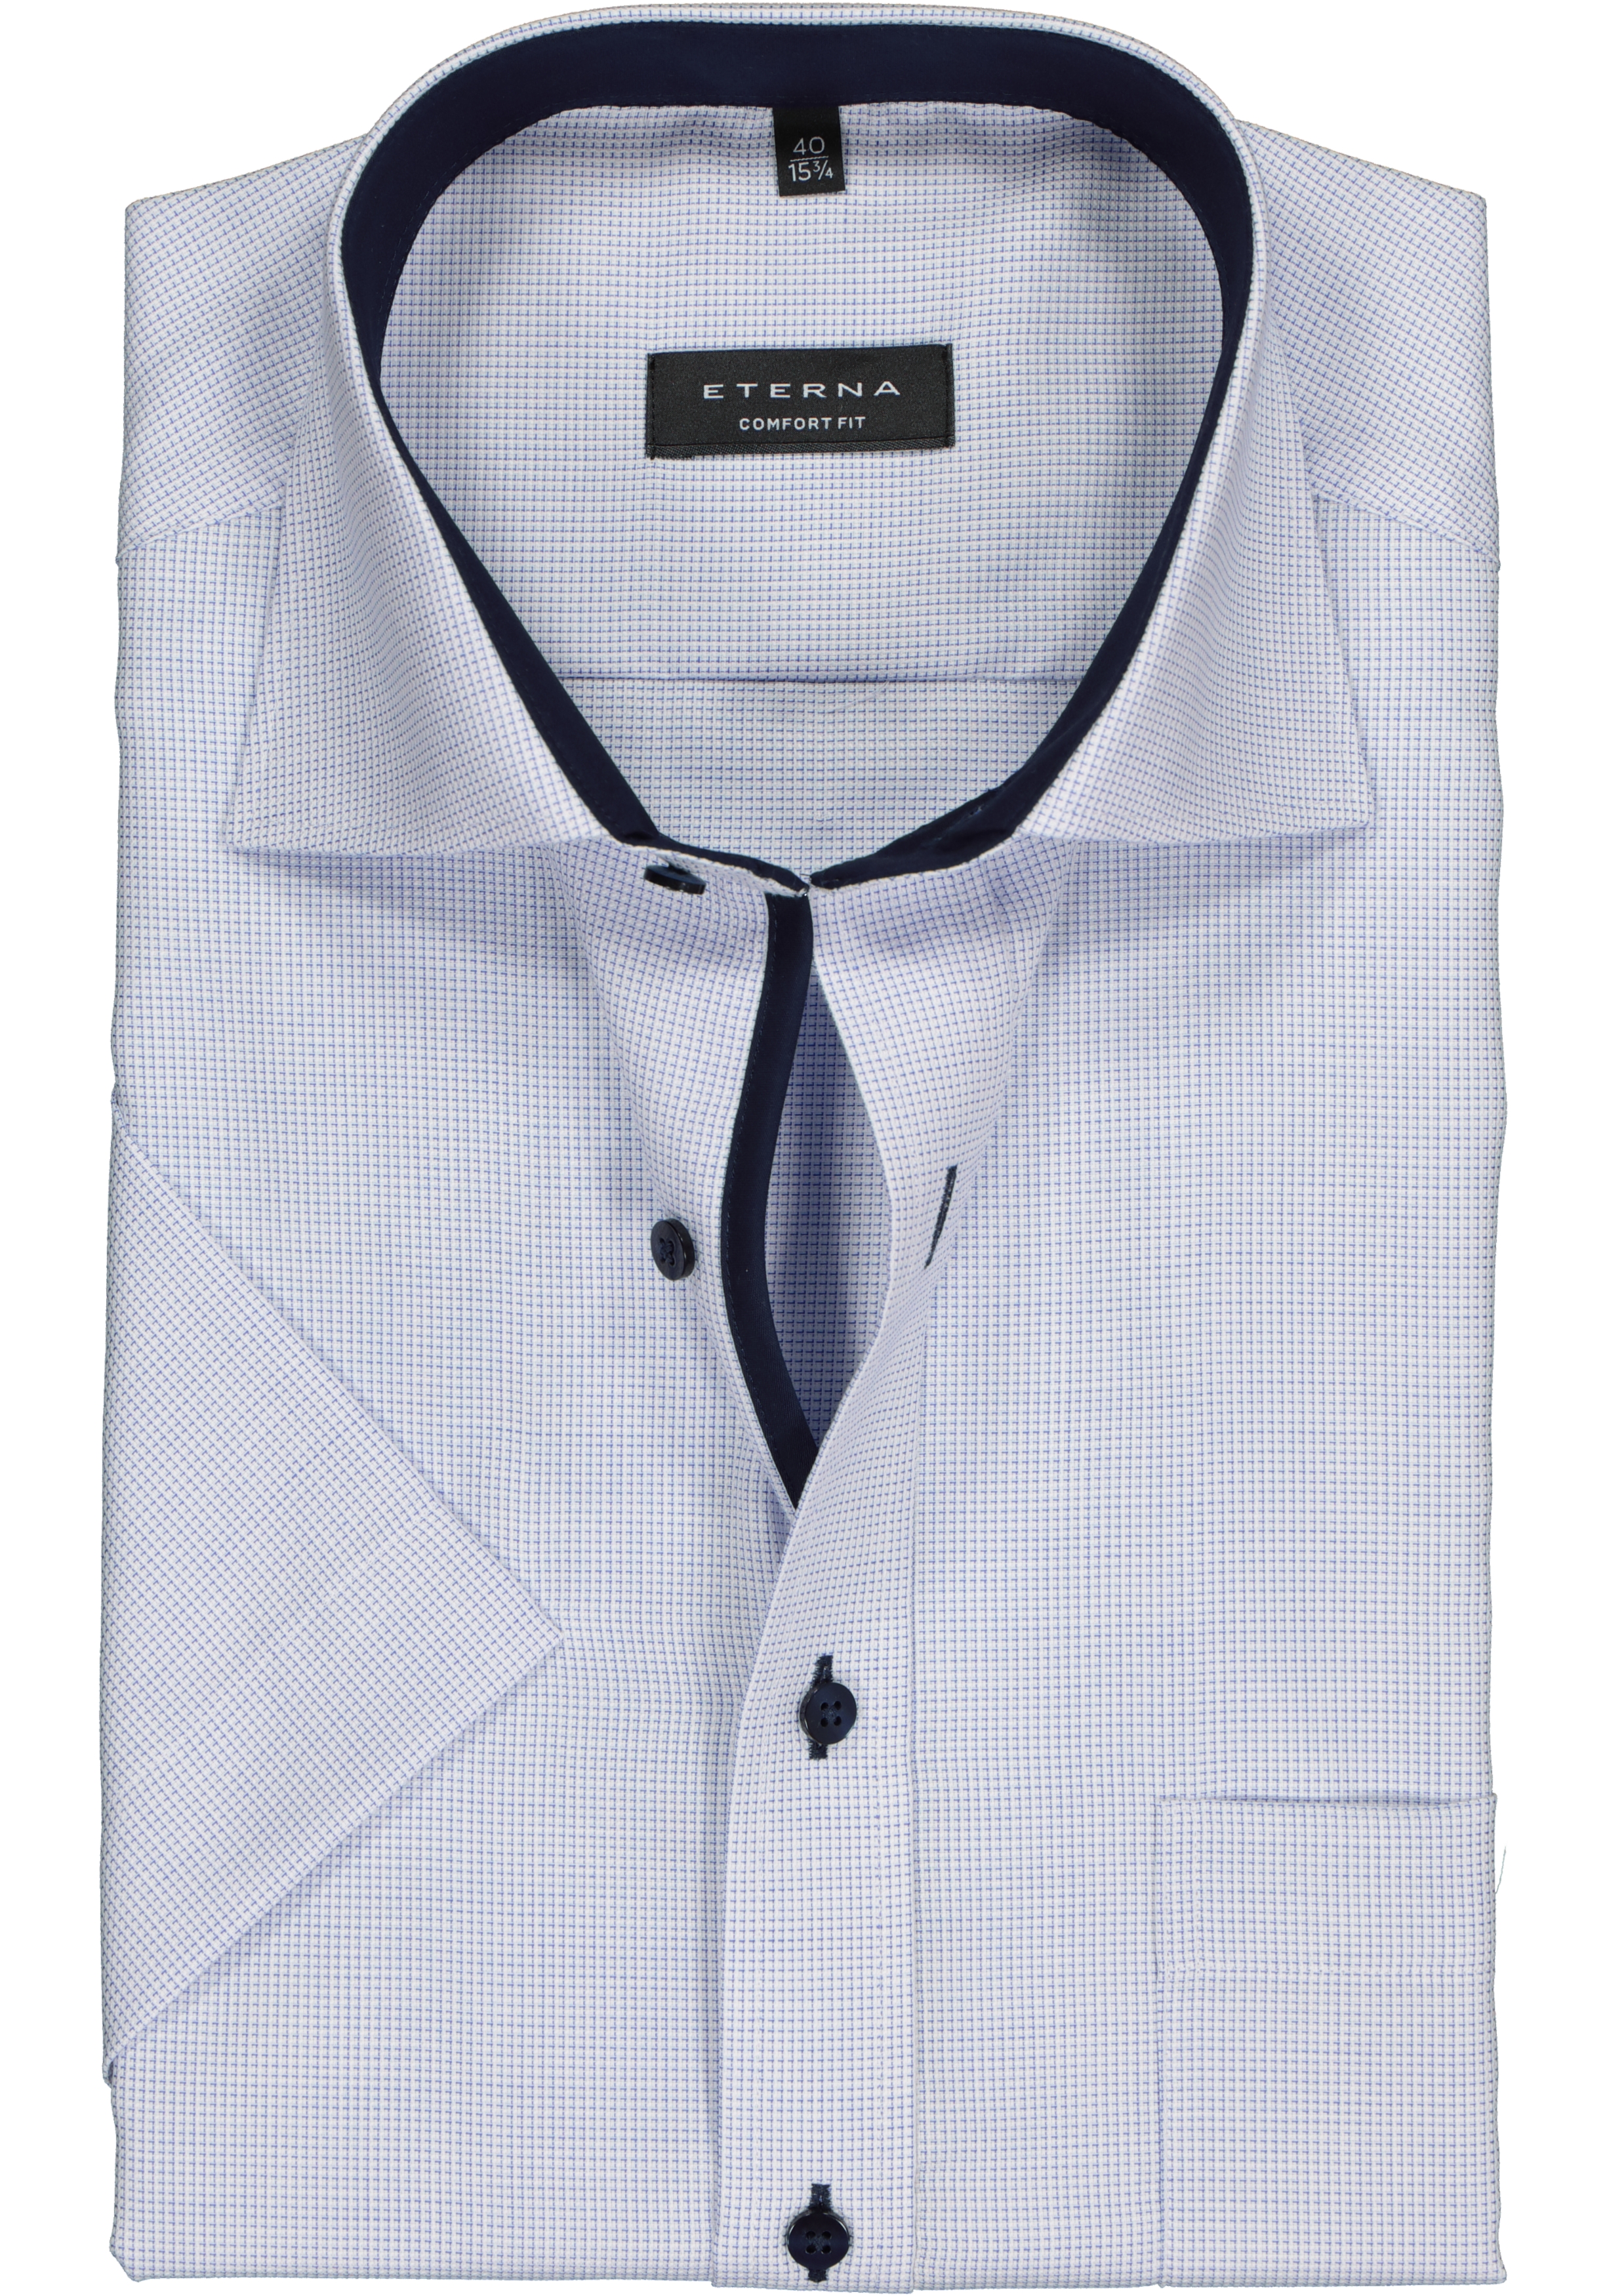 ETERNA comfort fit overhemd, korte mouw, structuur heren overhemd, lichtblauw met wit (donkerblauw contrast)